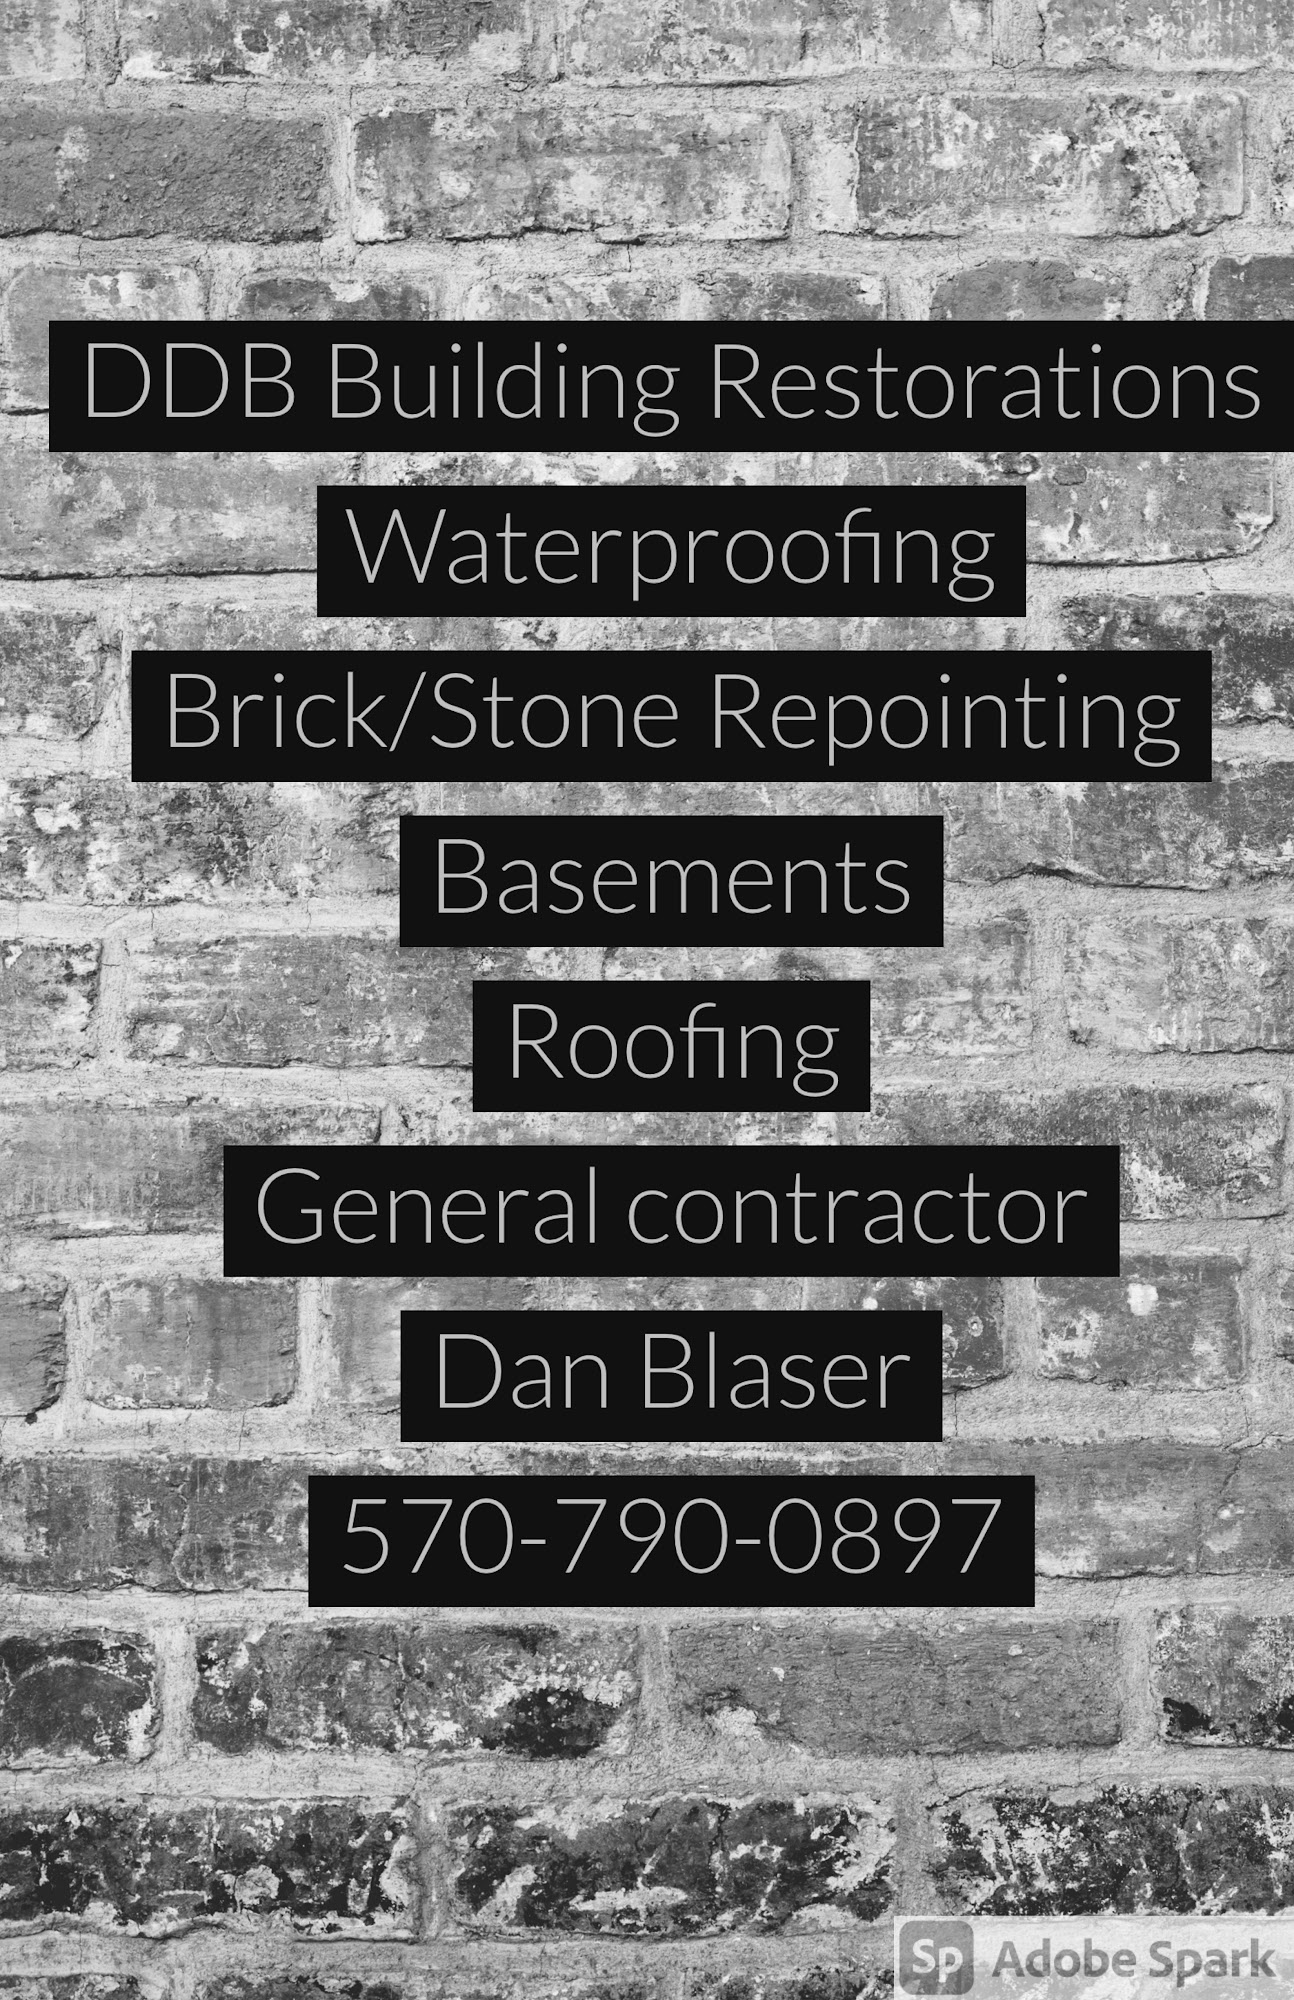 DDB Building Restorations LLC 3 Allenberry Dr, Ashley Pennsylvania 18706